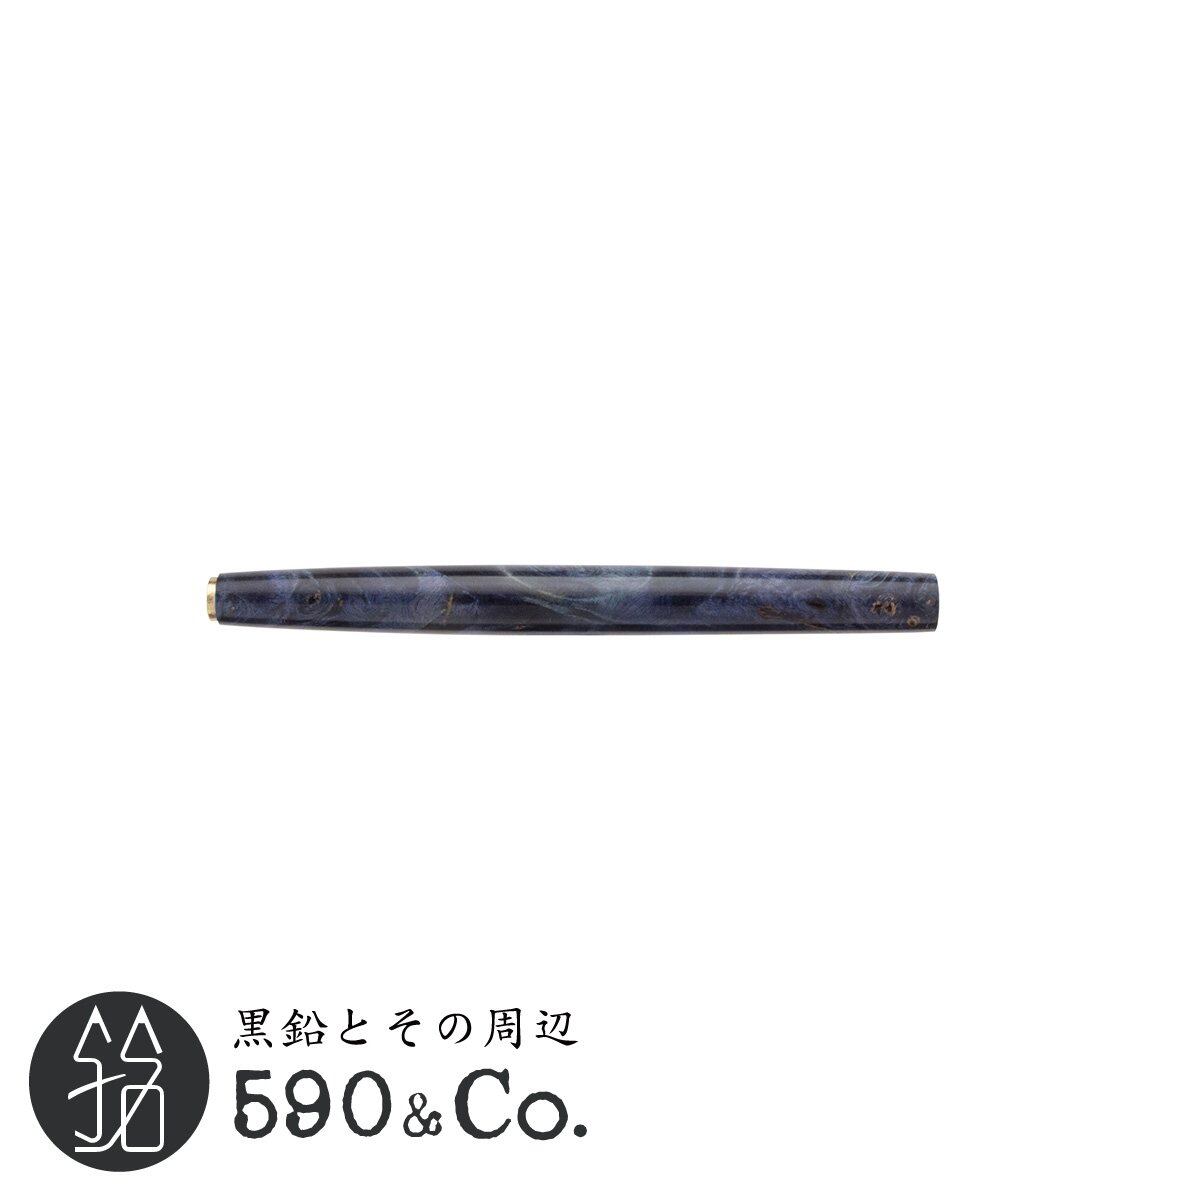 【緑陽工房】PGx スタビライズドウッド/丸軸(ブルー) A 590Co.